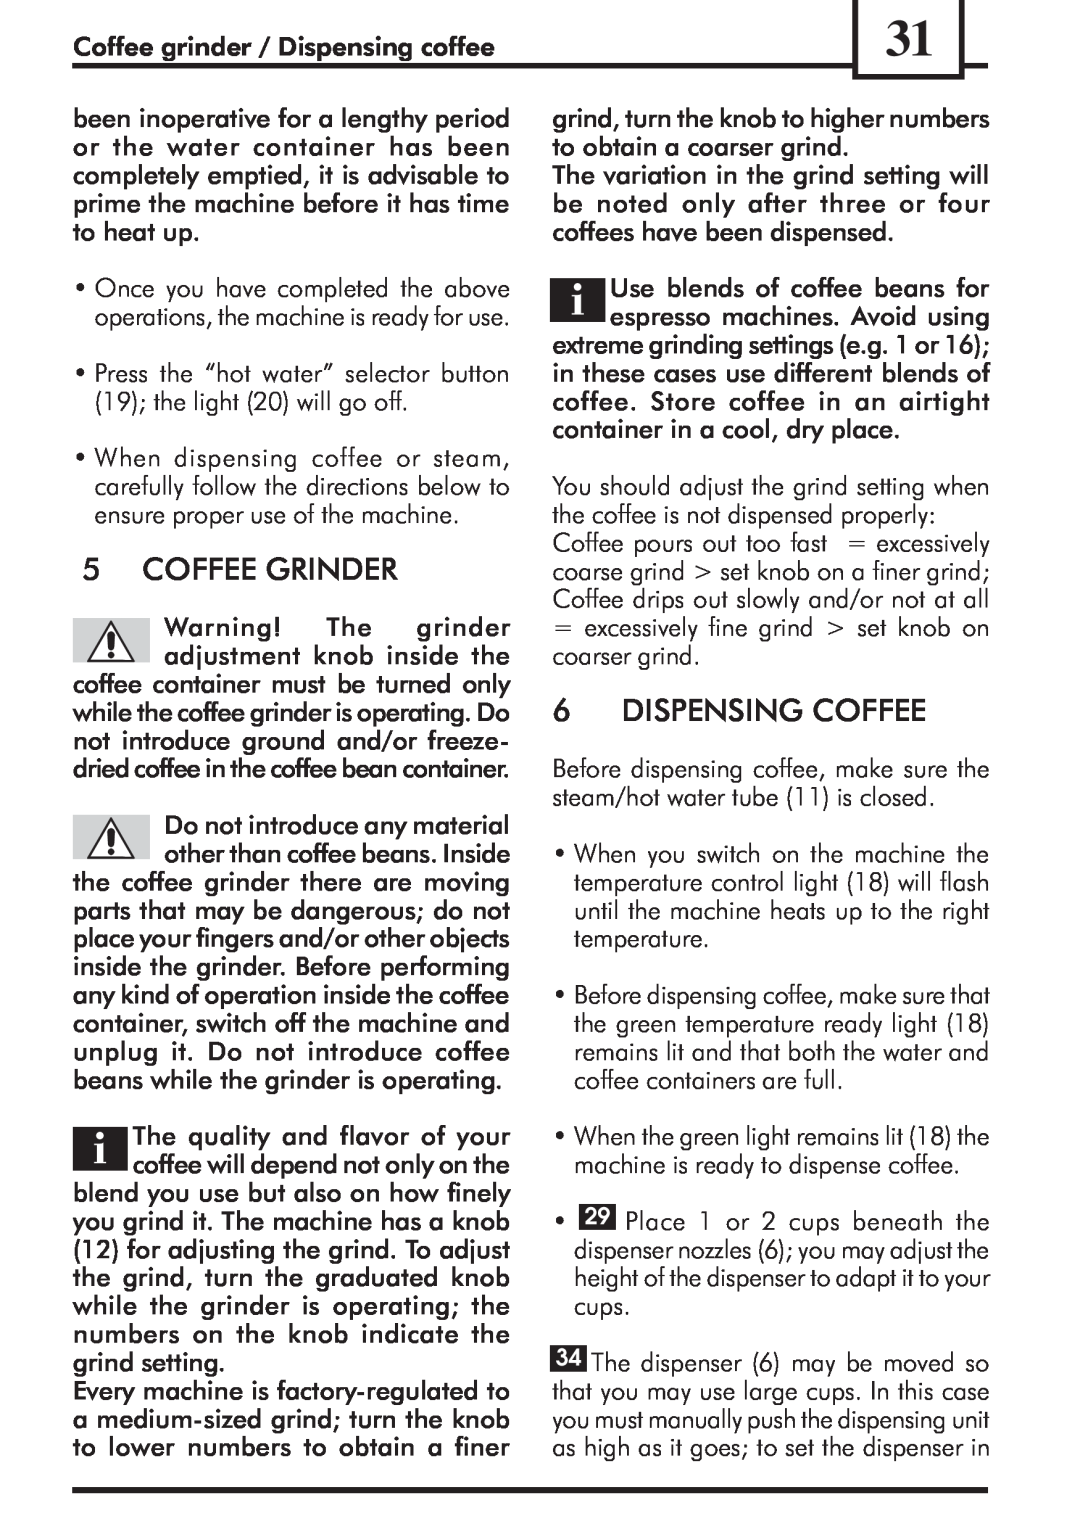 Saeco Coffee Makers VIENNADELUXE manual 5COFFEE GRINDER, 6DISPENSING COFFEE 